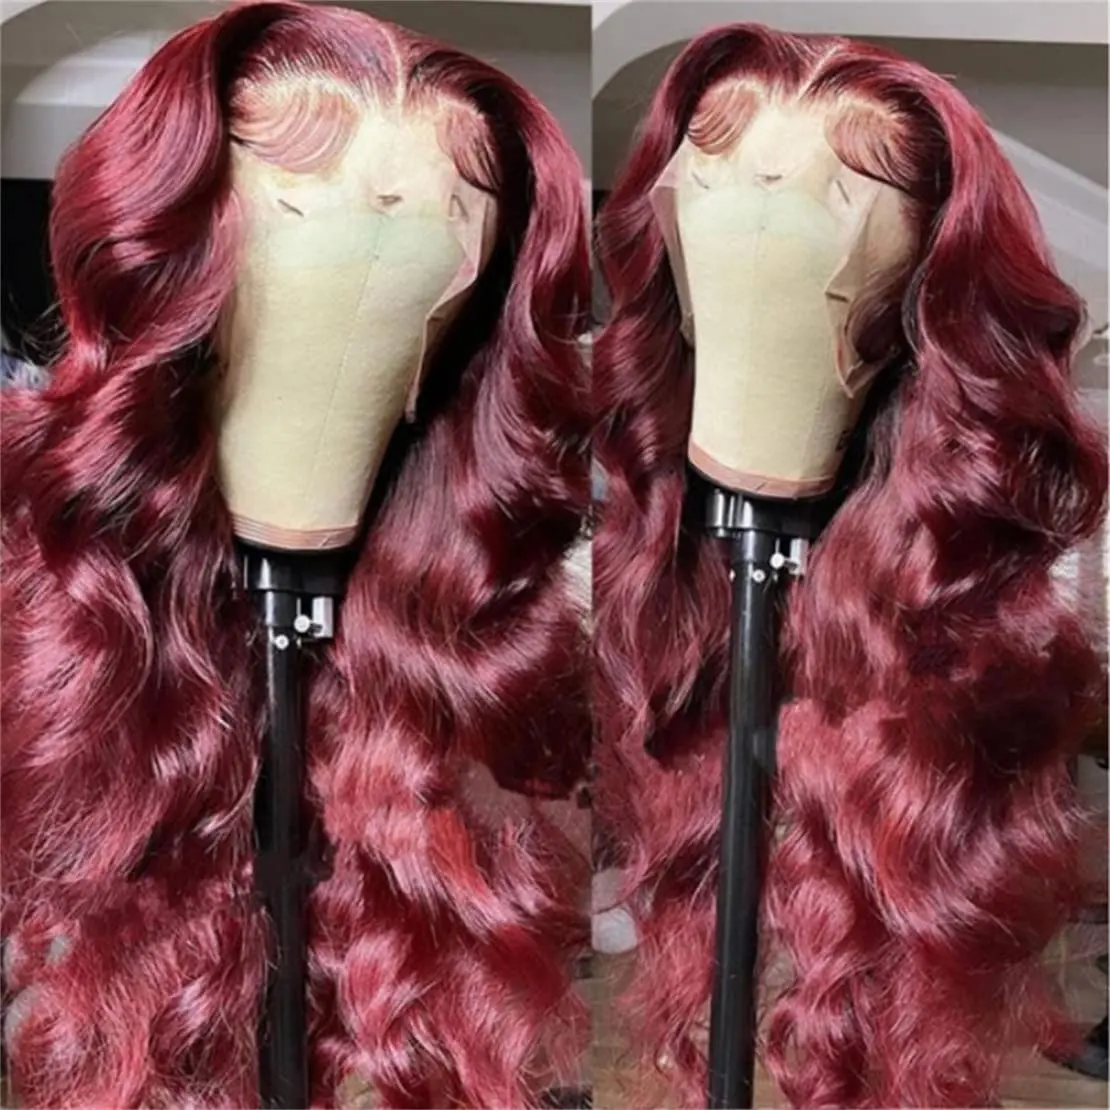 Perucas de cabelo humano frontal, atacado, vermelho, colorido, renda, cabelo frontal, pré colhidos, 13x6 renda frontal, peruca para mulheres negras